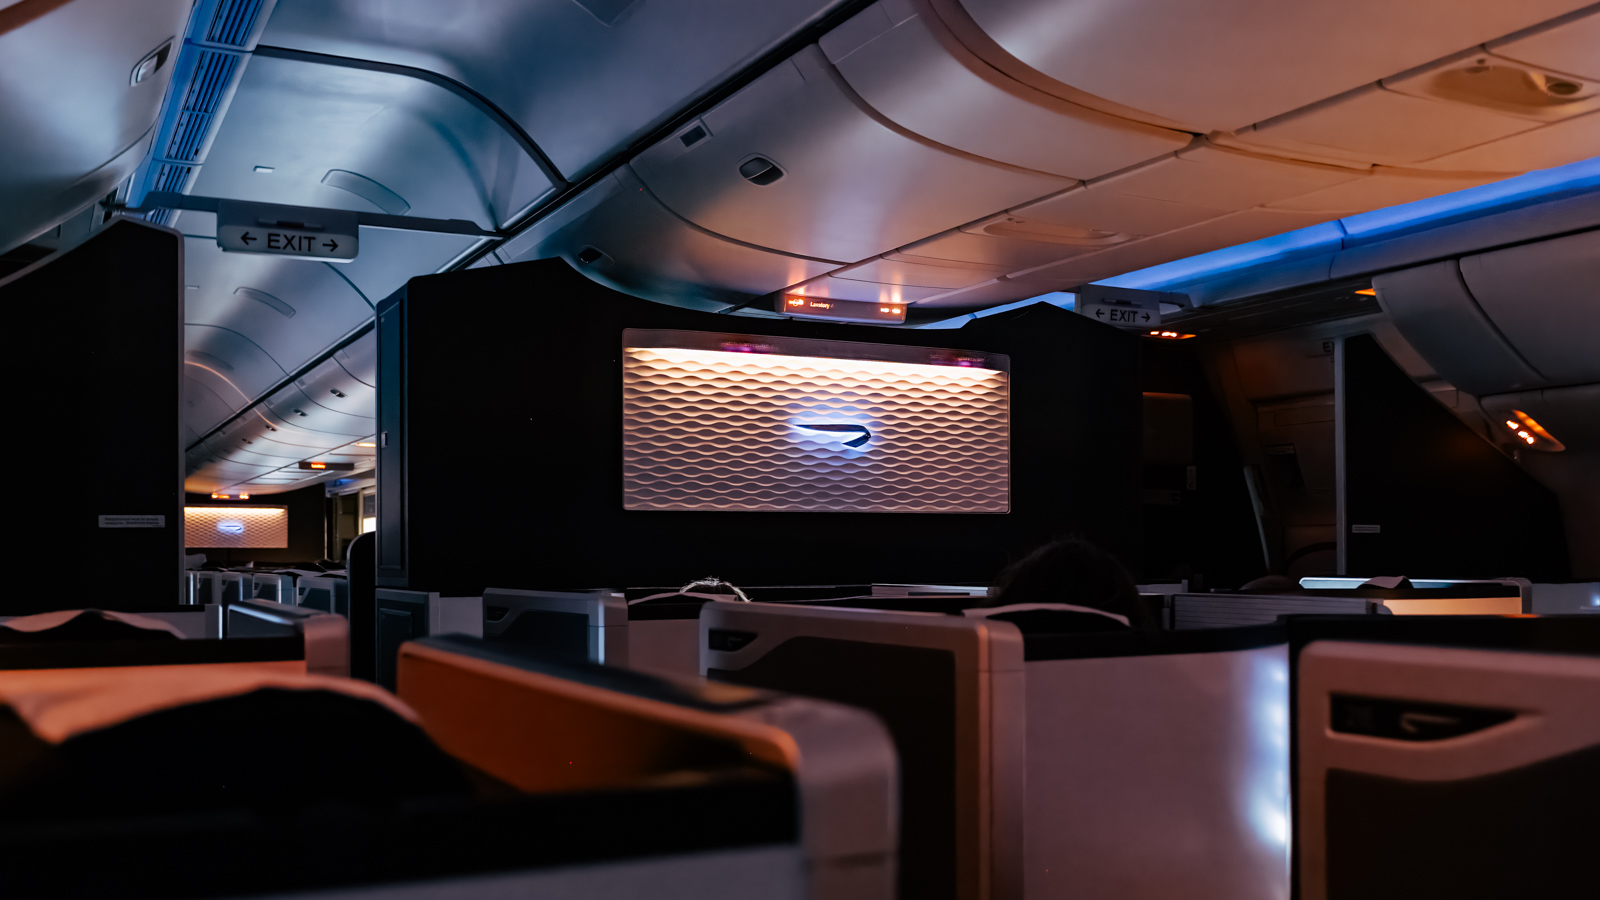 British Airways Club Suites cabin styling